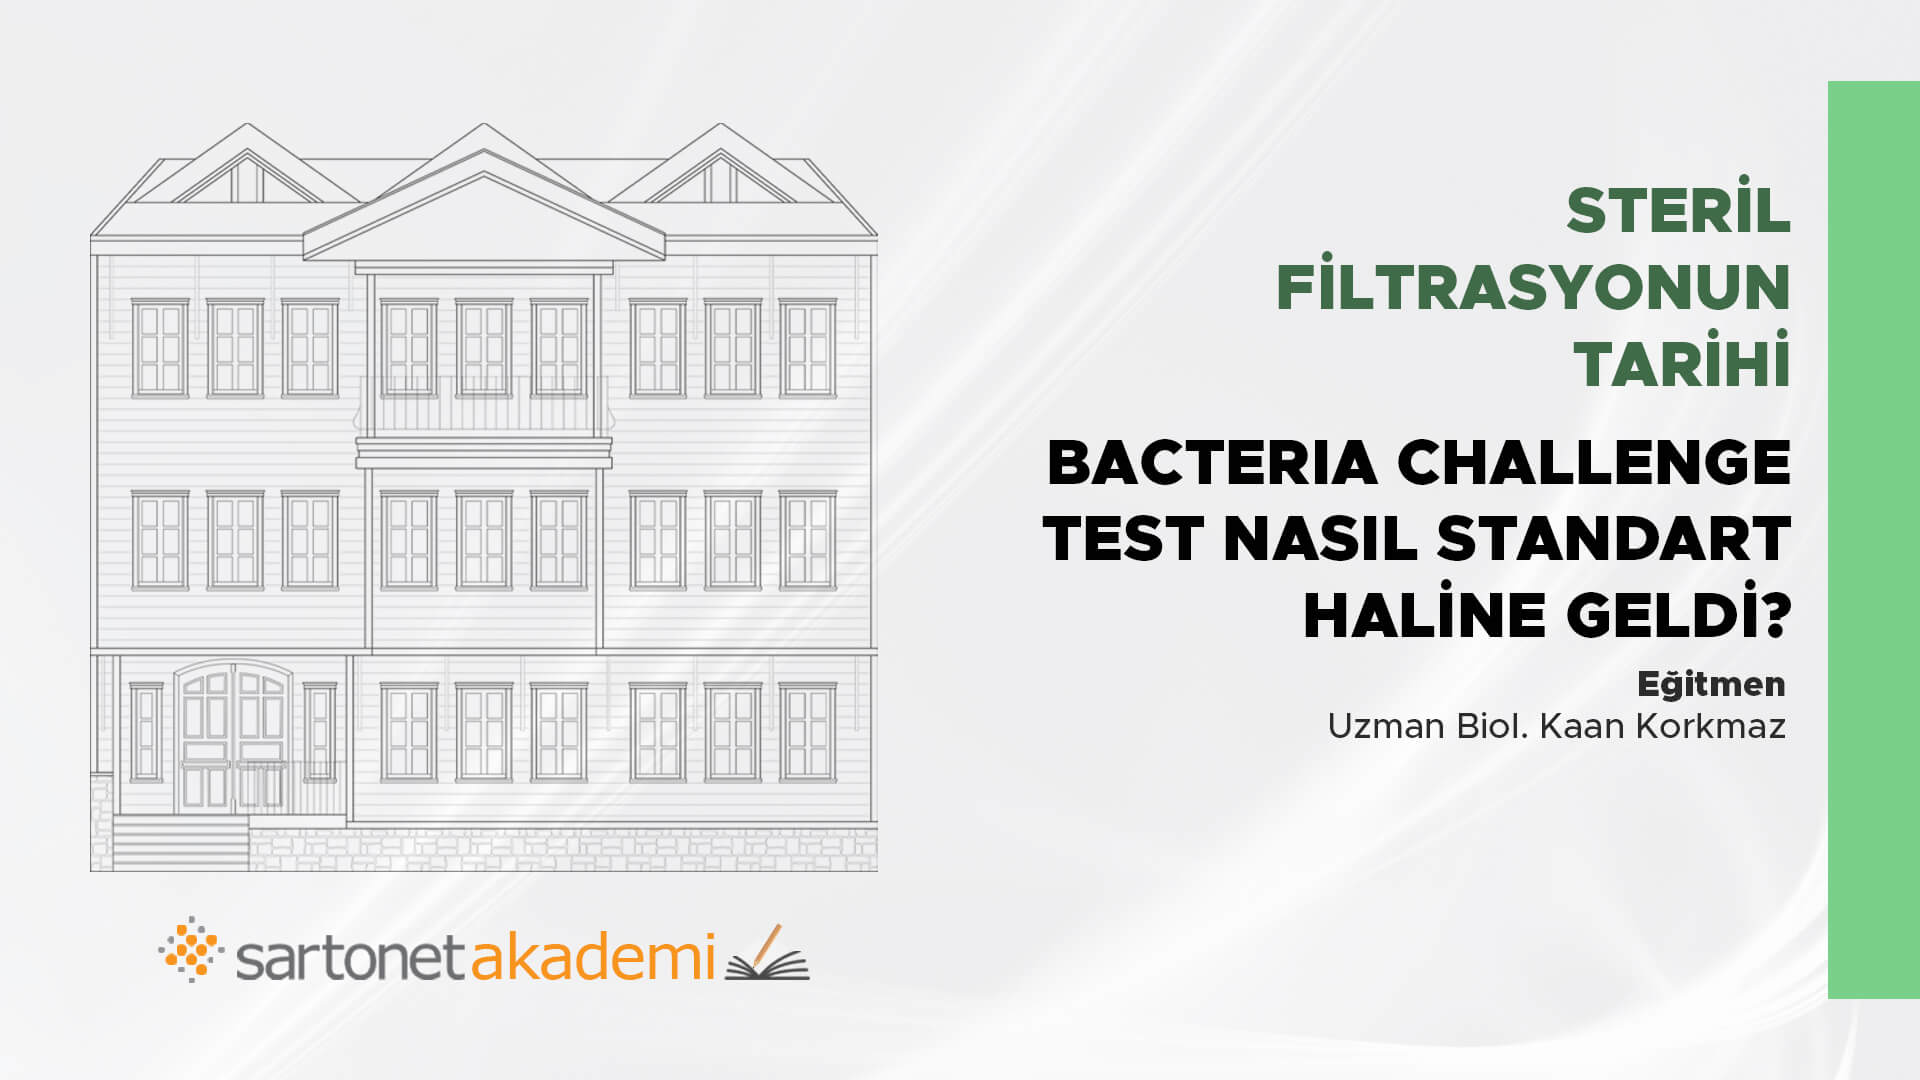 Steril Filtrasyonun tarihi? Bacteria Challenge Test nasıl standart haline geldi?